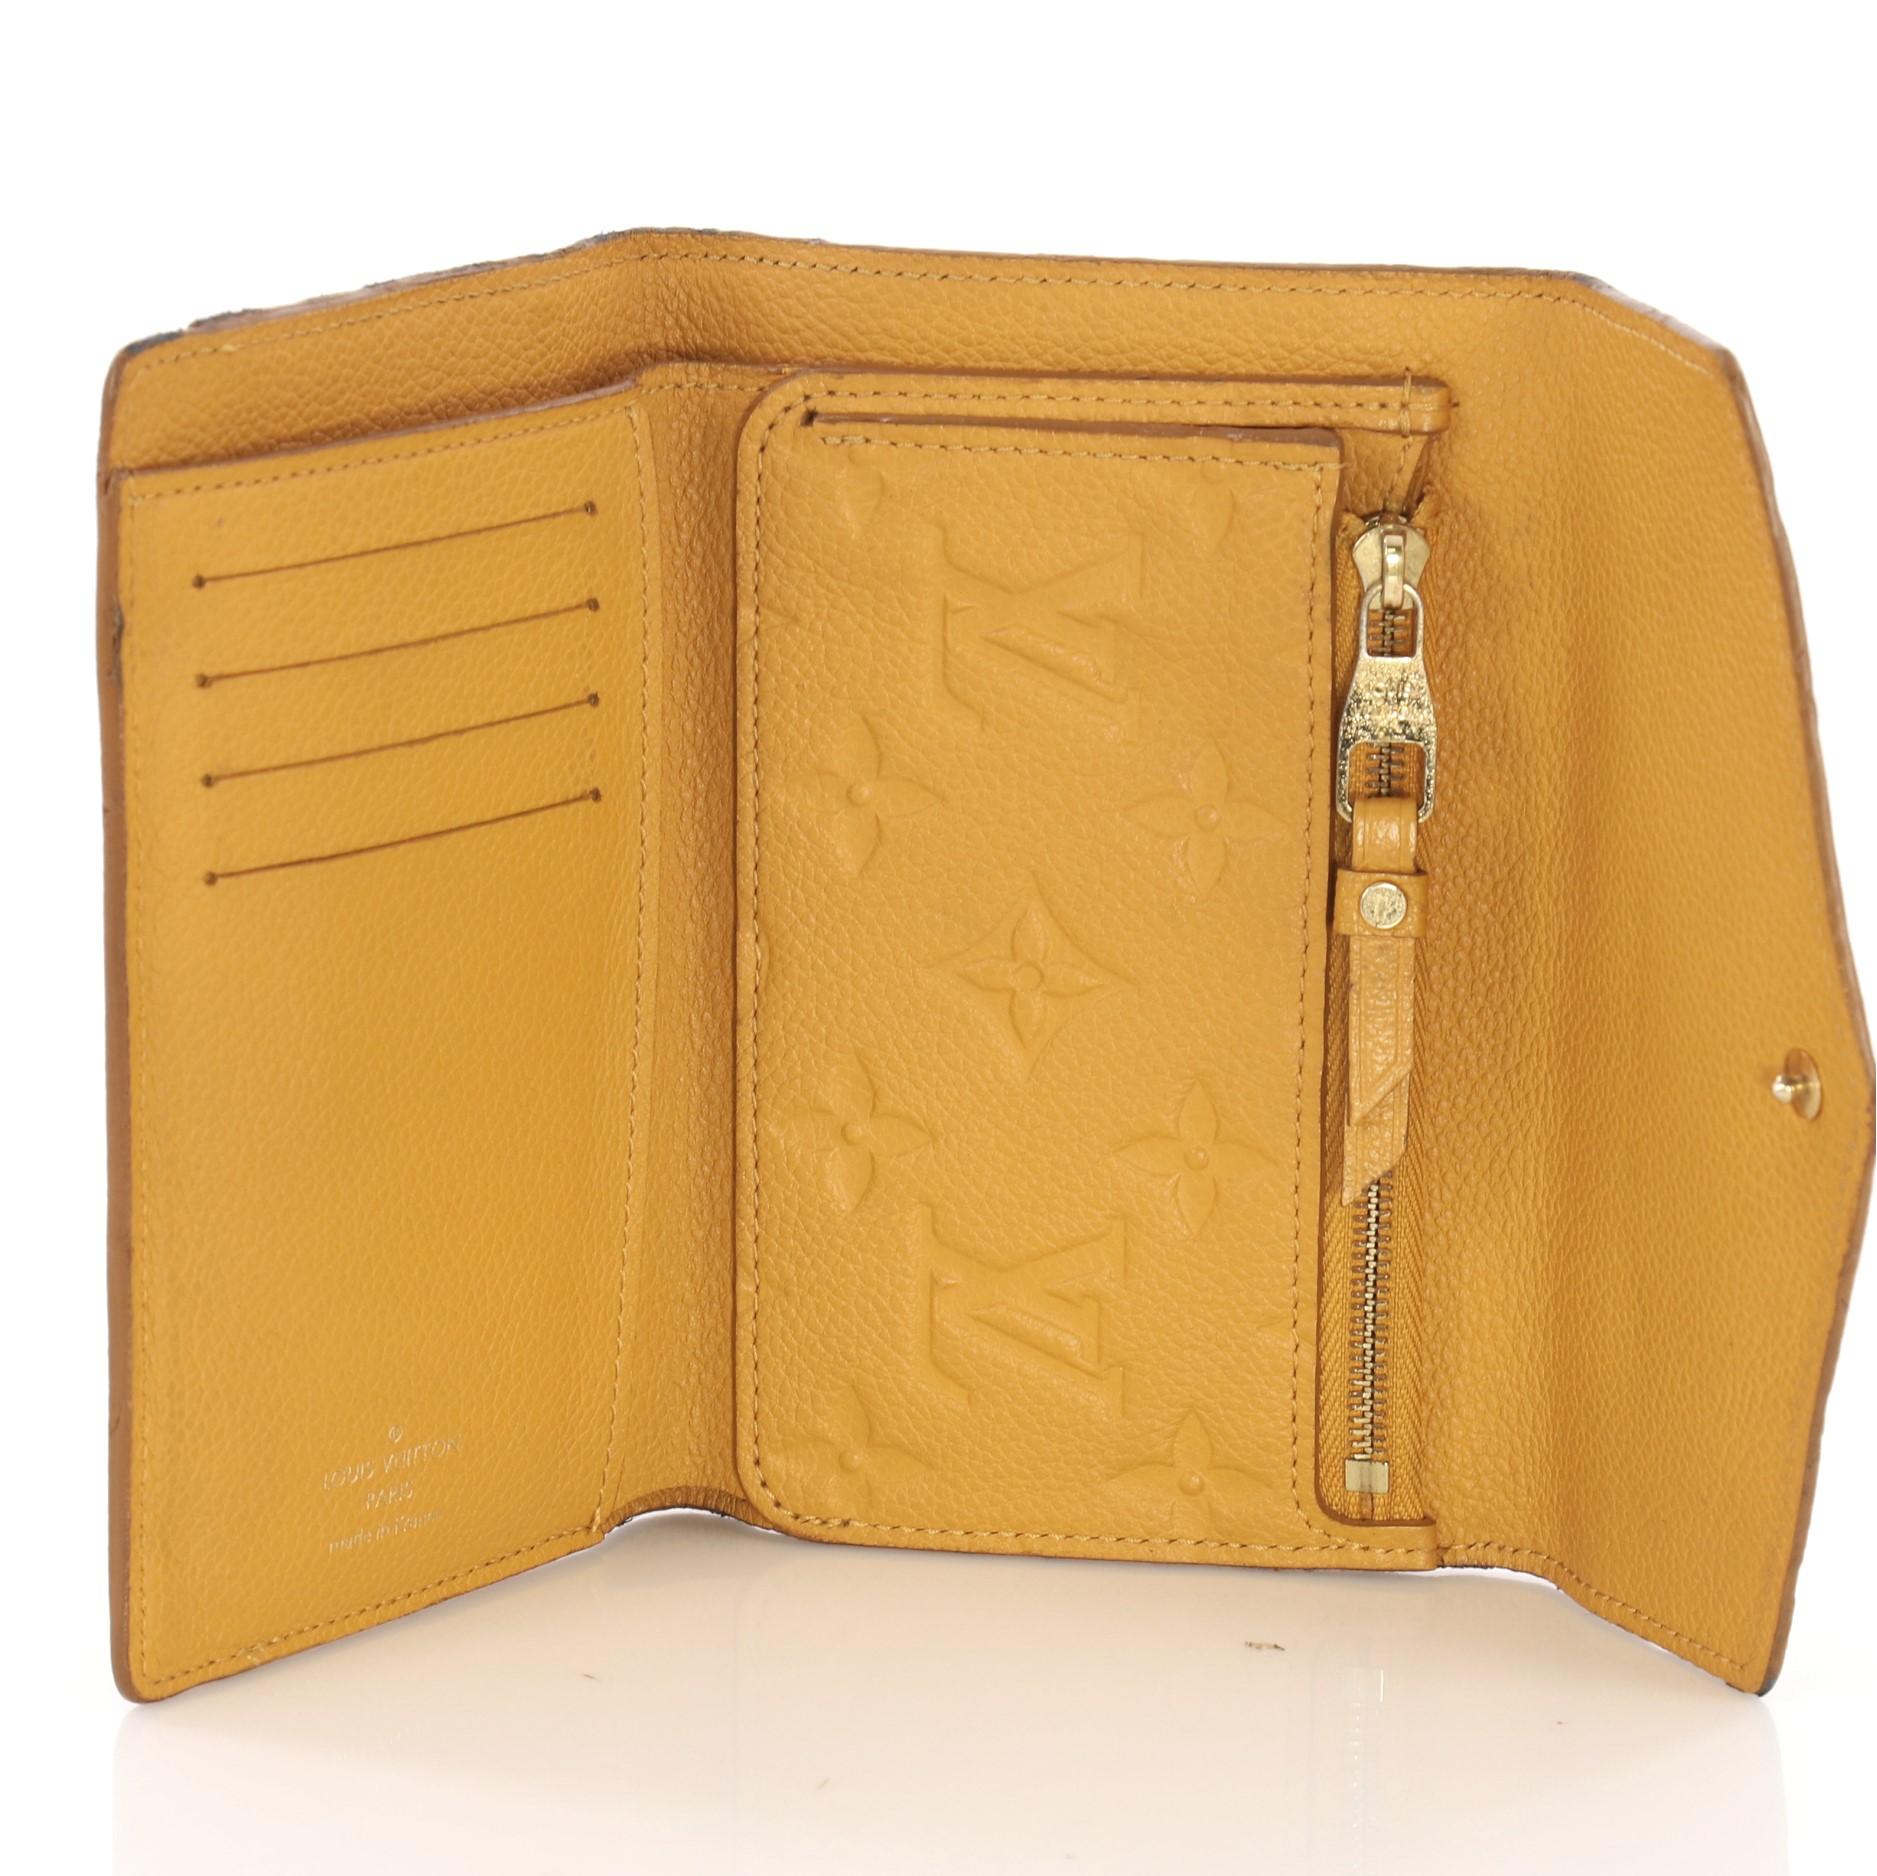 Women's Louis Vuitton Compact Curieuse Wallet Monogram Empreinte Leather